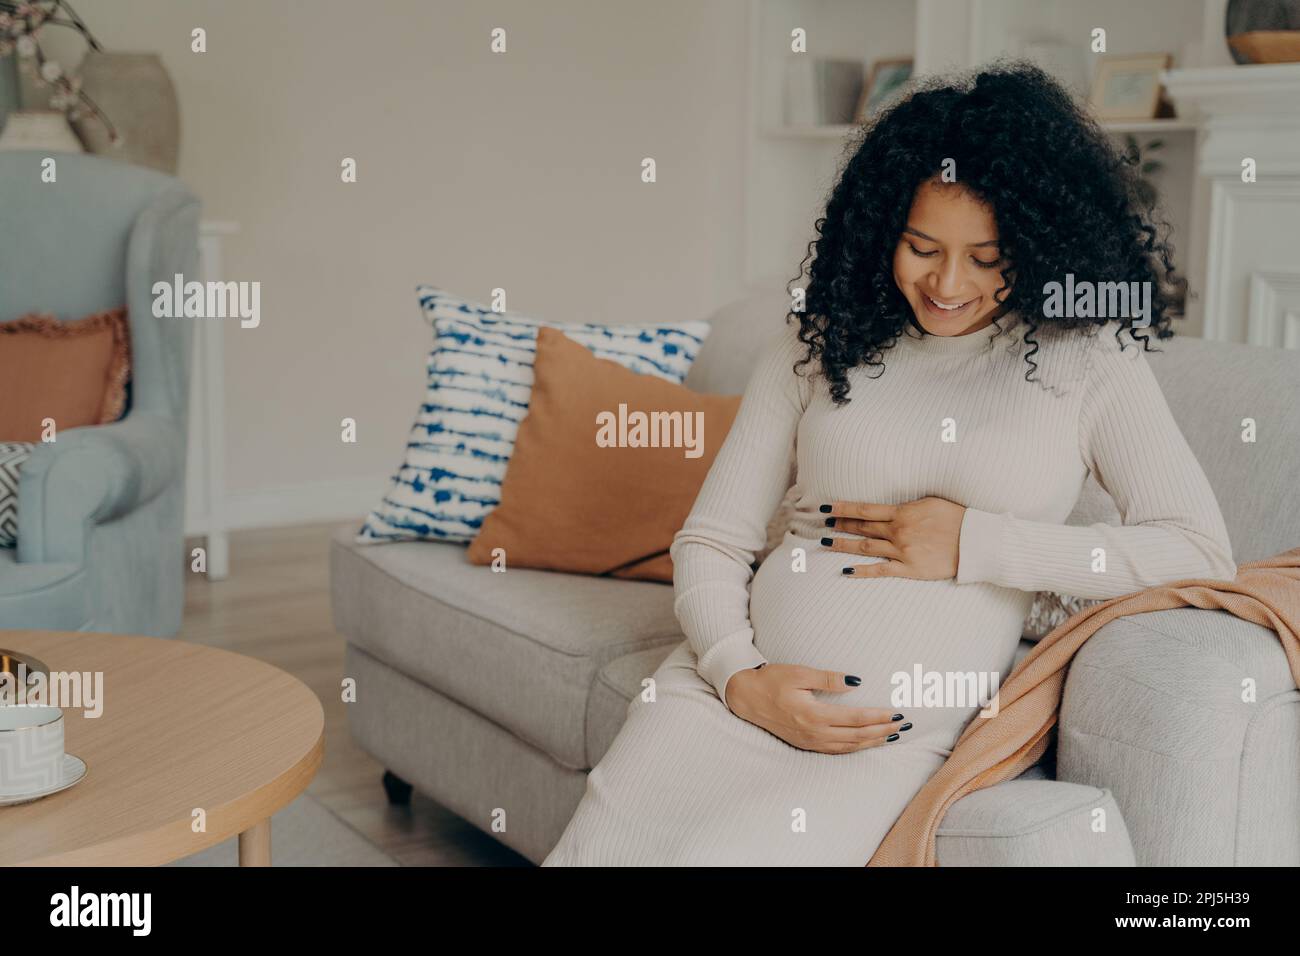 Glückliche junge, schwangere afro-amerikanische Dame in weißem Kleid mit langen lockigen Haaren, die ihren Bauch mit einem sanften Lächeln ansieht und eine kleine Pause von der Hausarbeit macht Stockfoto